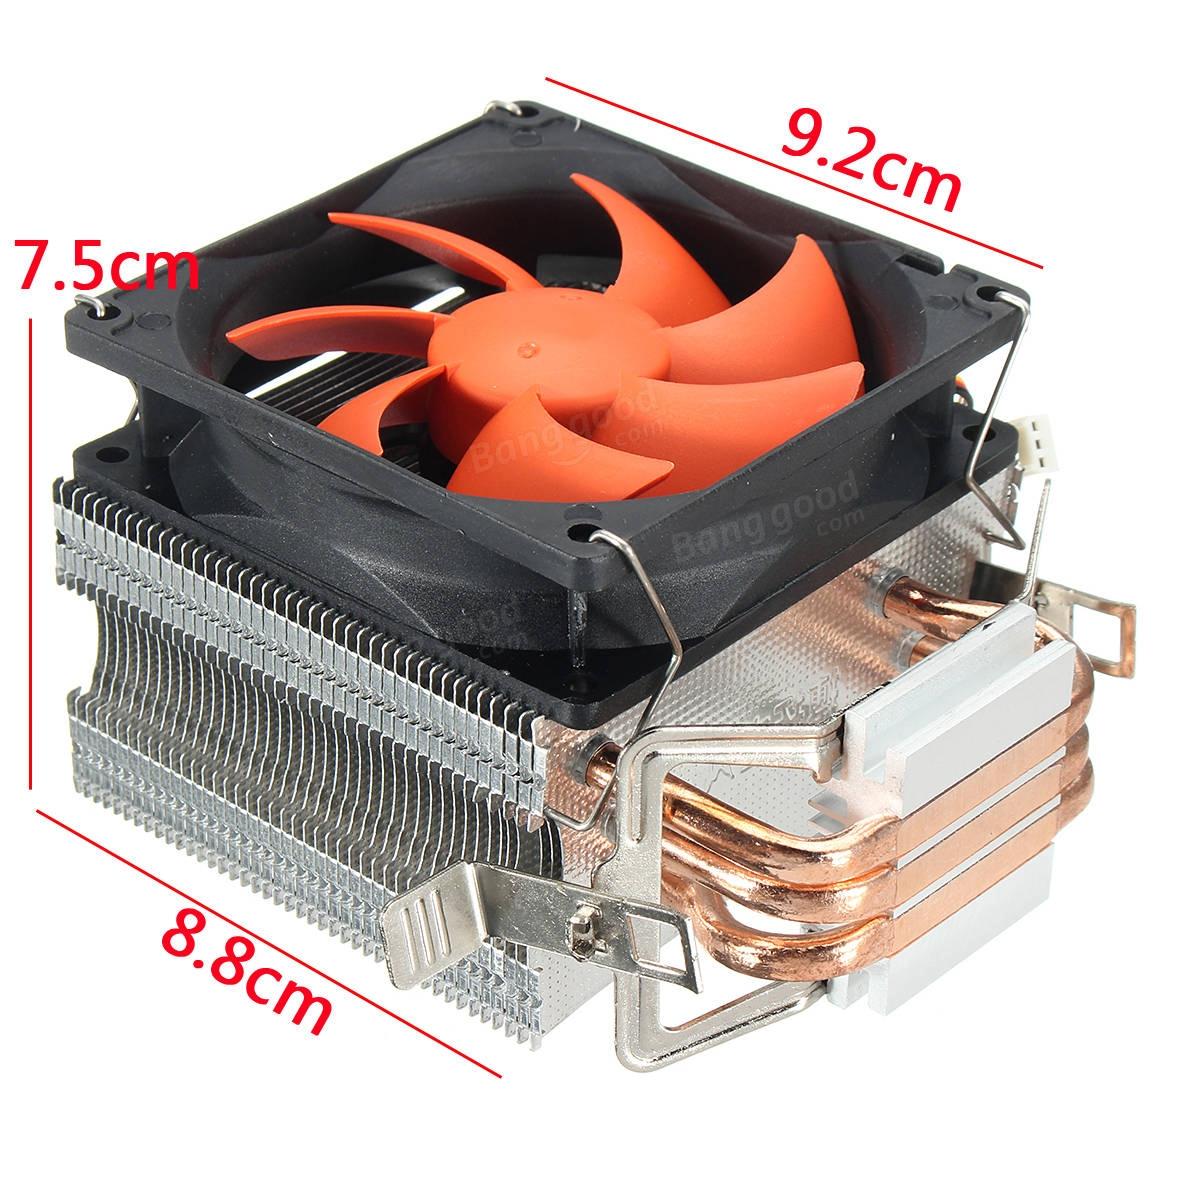 Самый лучший кулер. Кулер для процессора Deepcool 775. Thermaltake 1155 Cooler. Thermaltake кулер 775. Вентилятор ЦПУ CPU Cooler (jonsbo tw4-240 водяное охлаждение).